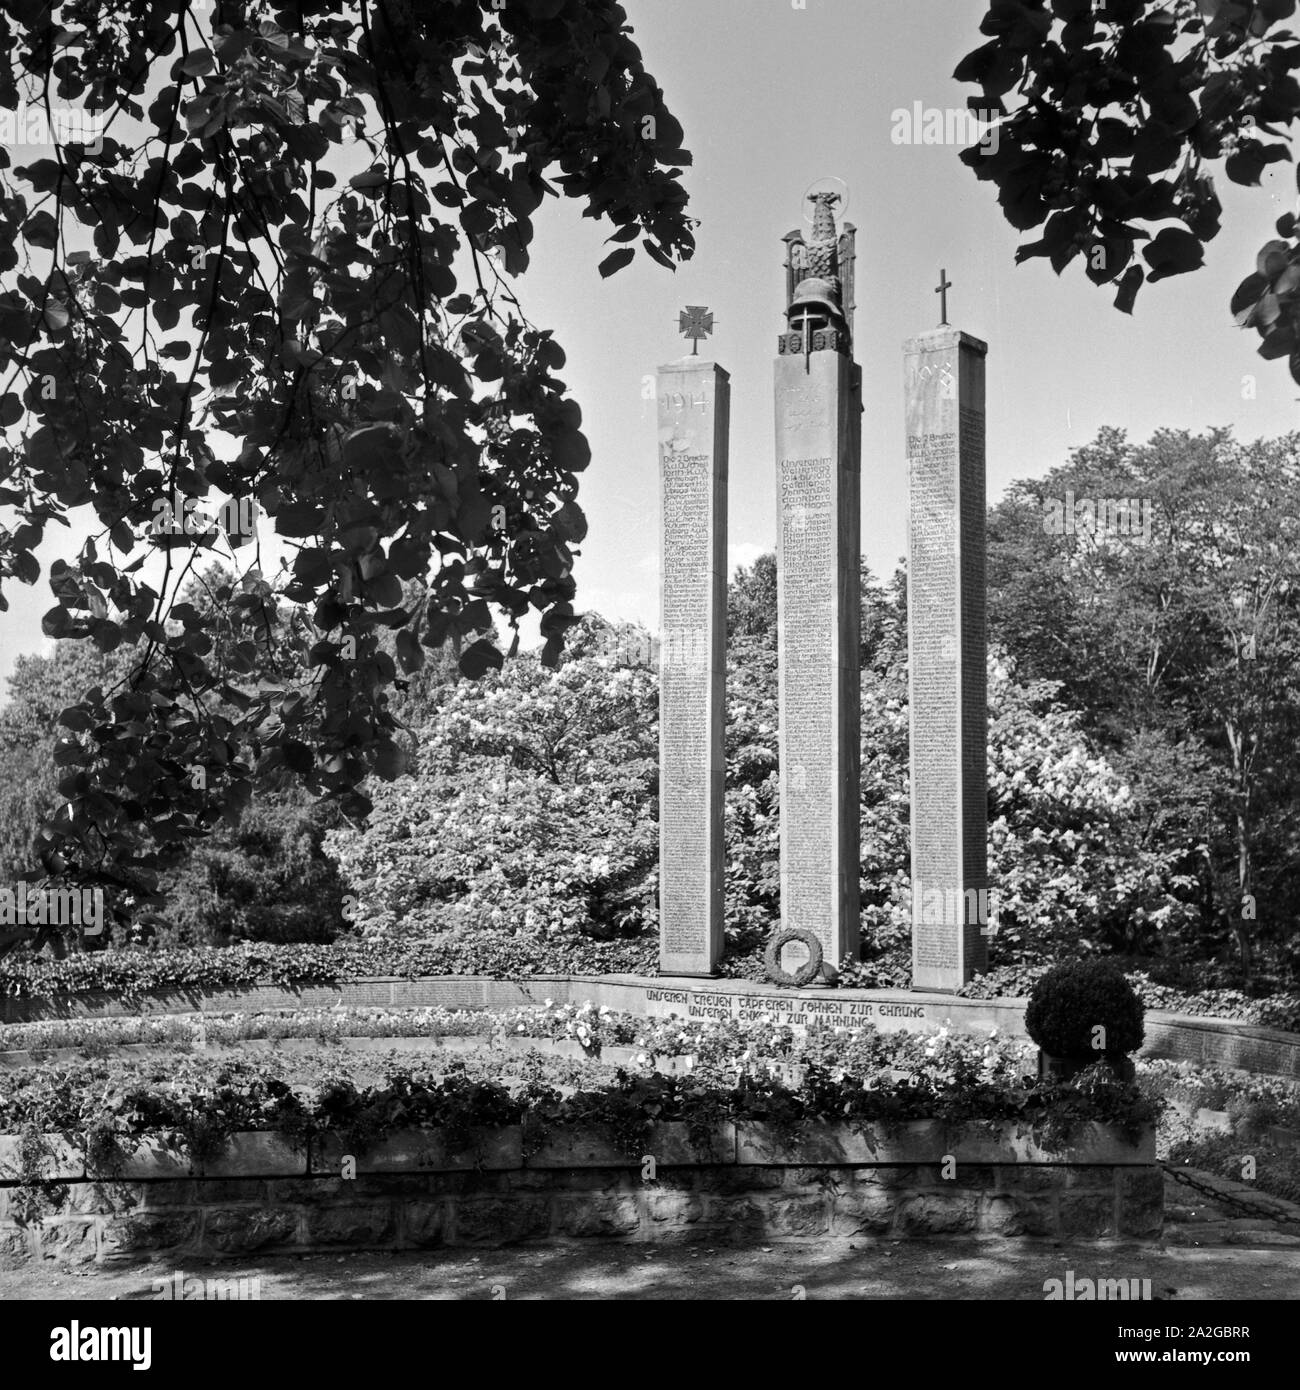 Ehrenmal für die im 1. Weltkrieg gefallenen Soldaten in Wuppertal, Deutschland 1930er Jahre. WWI memorial for fallen soldiers at Wuppertal, Germany 1930s. Stock Photo